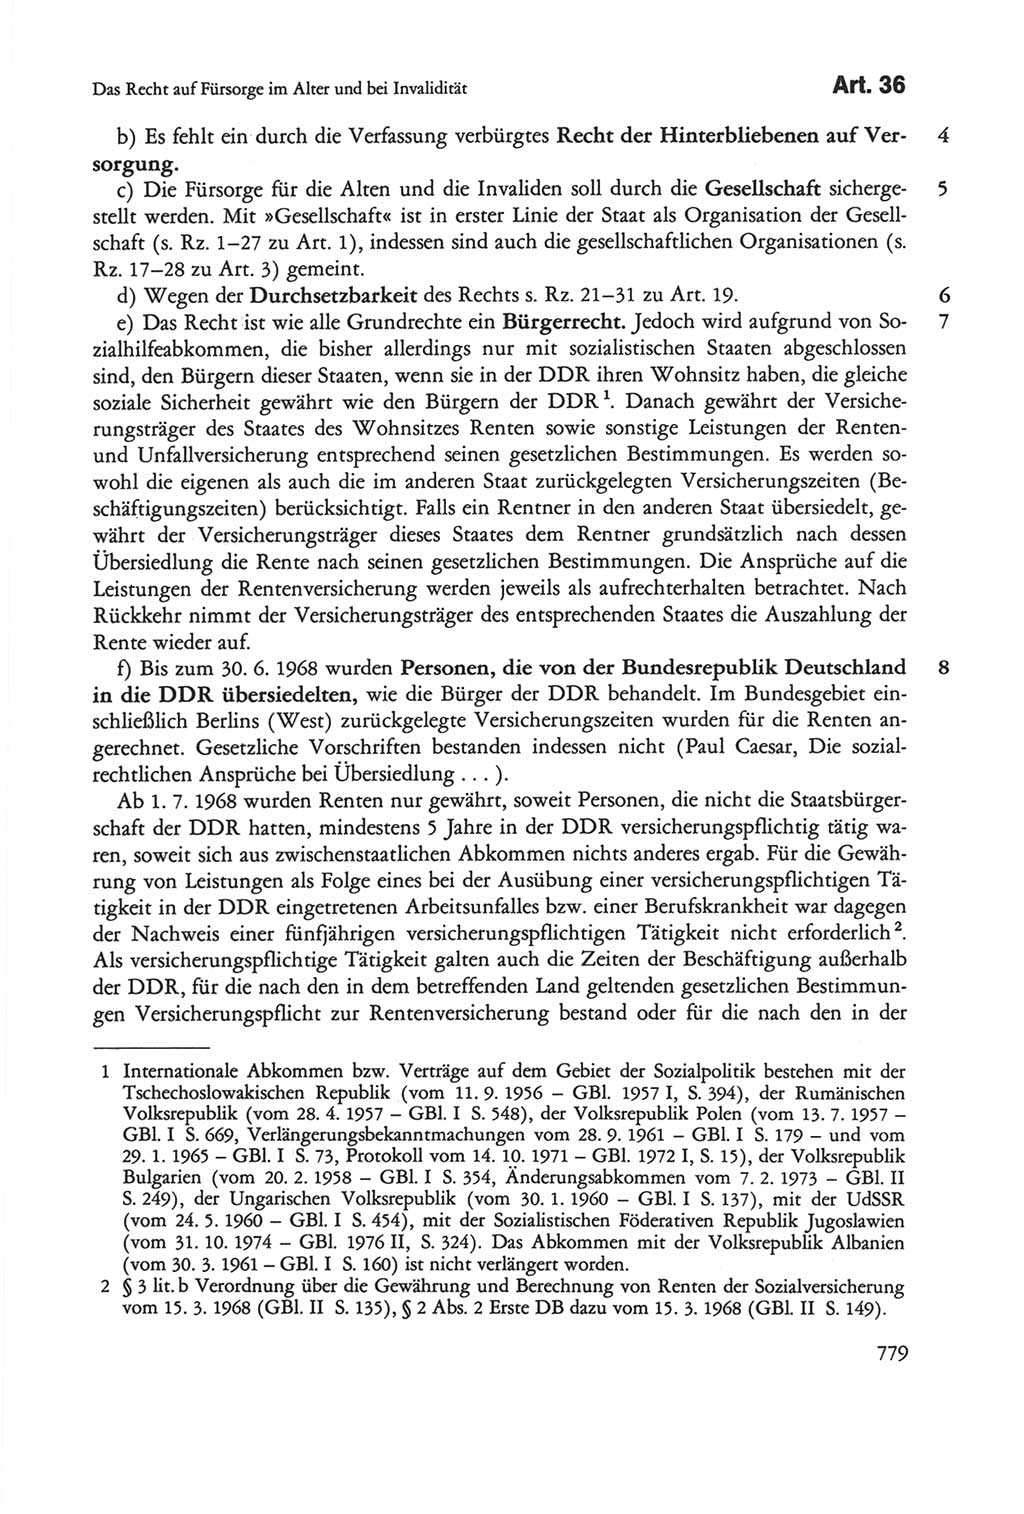 Die sozialistische Verfassung der Deutschen Demokratischen Republik (DDR), Kommentar 1982, Seite 779 (Soz. Verf. DDR Komm. 1982, S. 779)